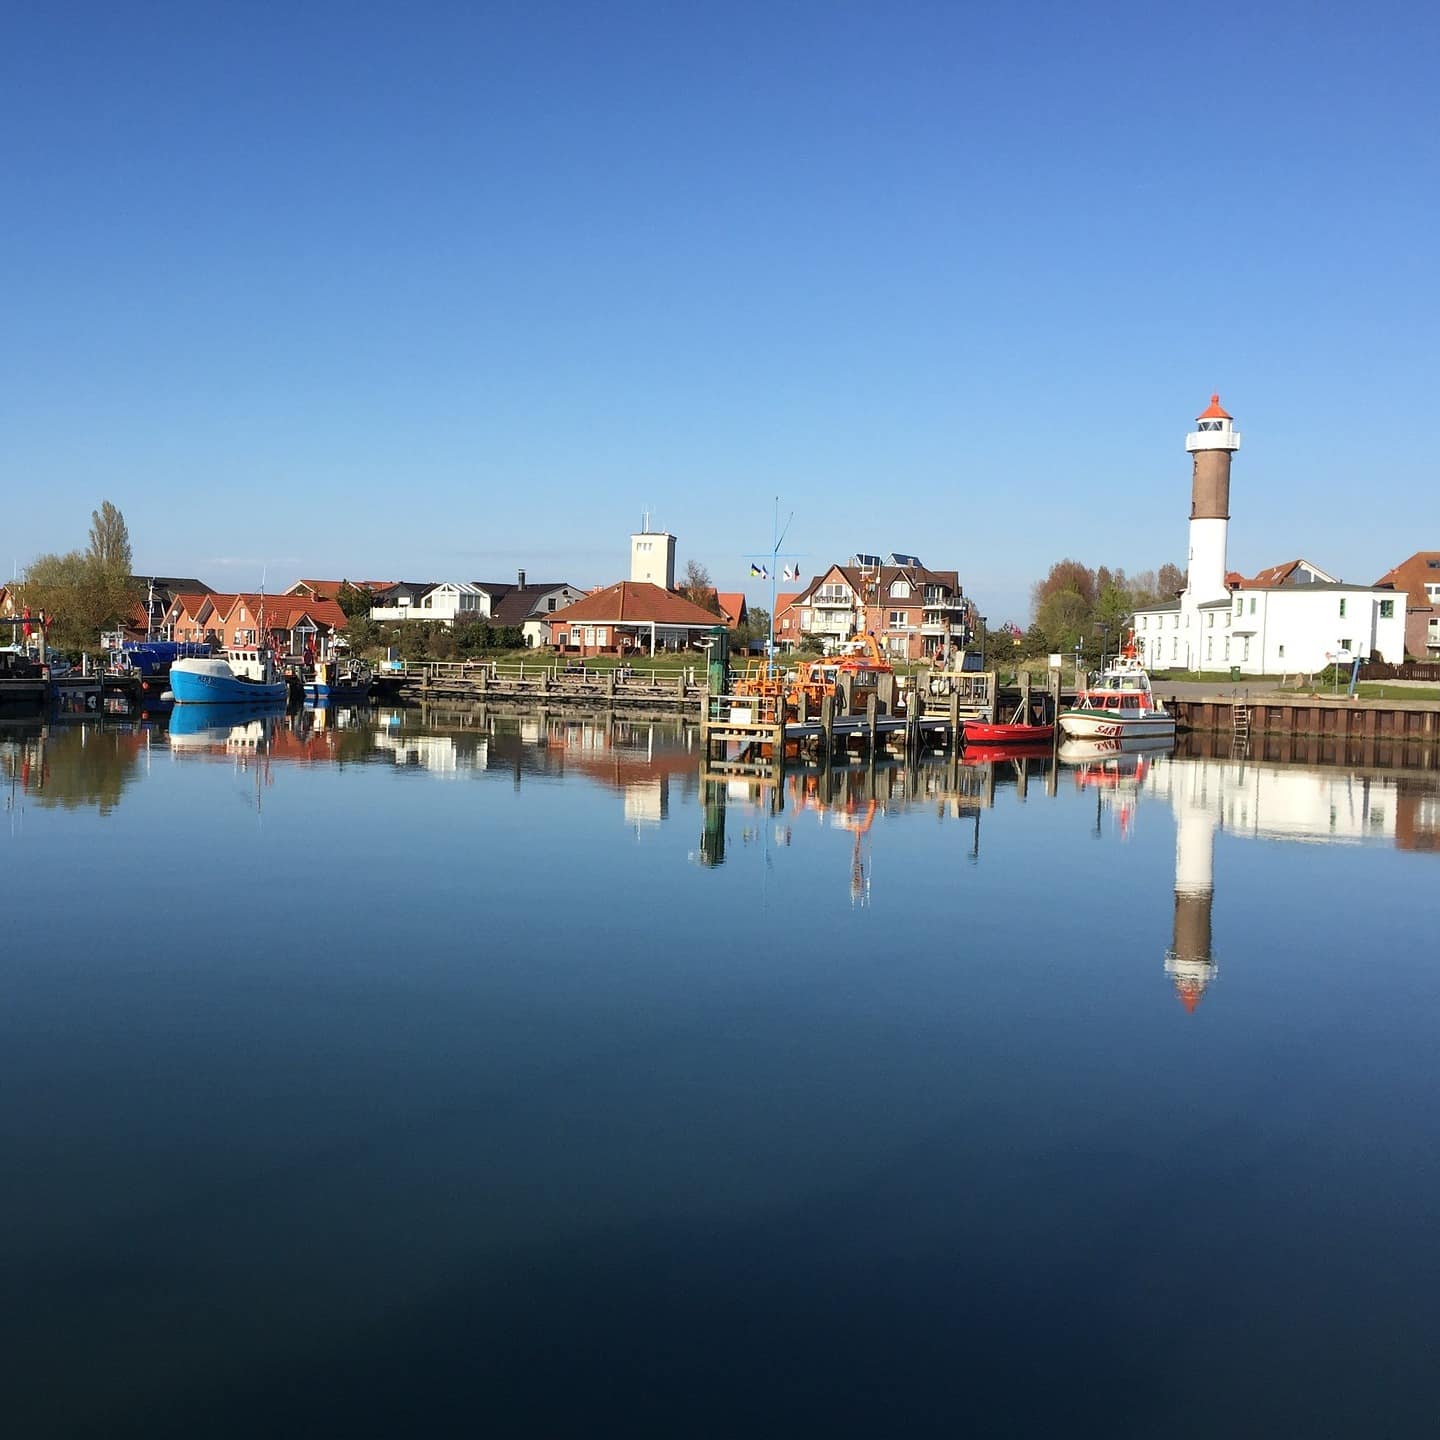 Blick über das Wasser auf den kleinen Hafen von Timmendorf, Häuser sind im Hintergrund zu sehen